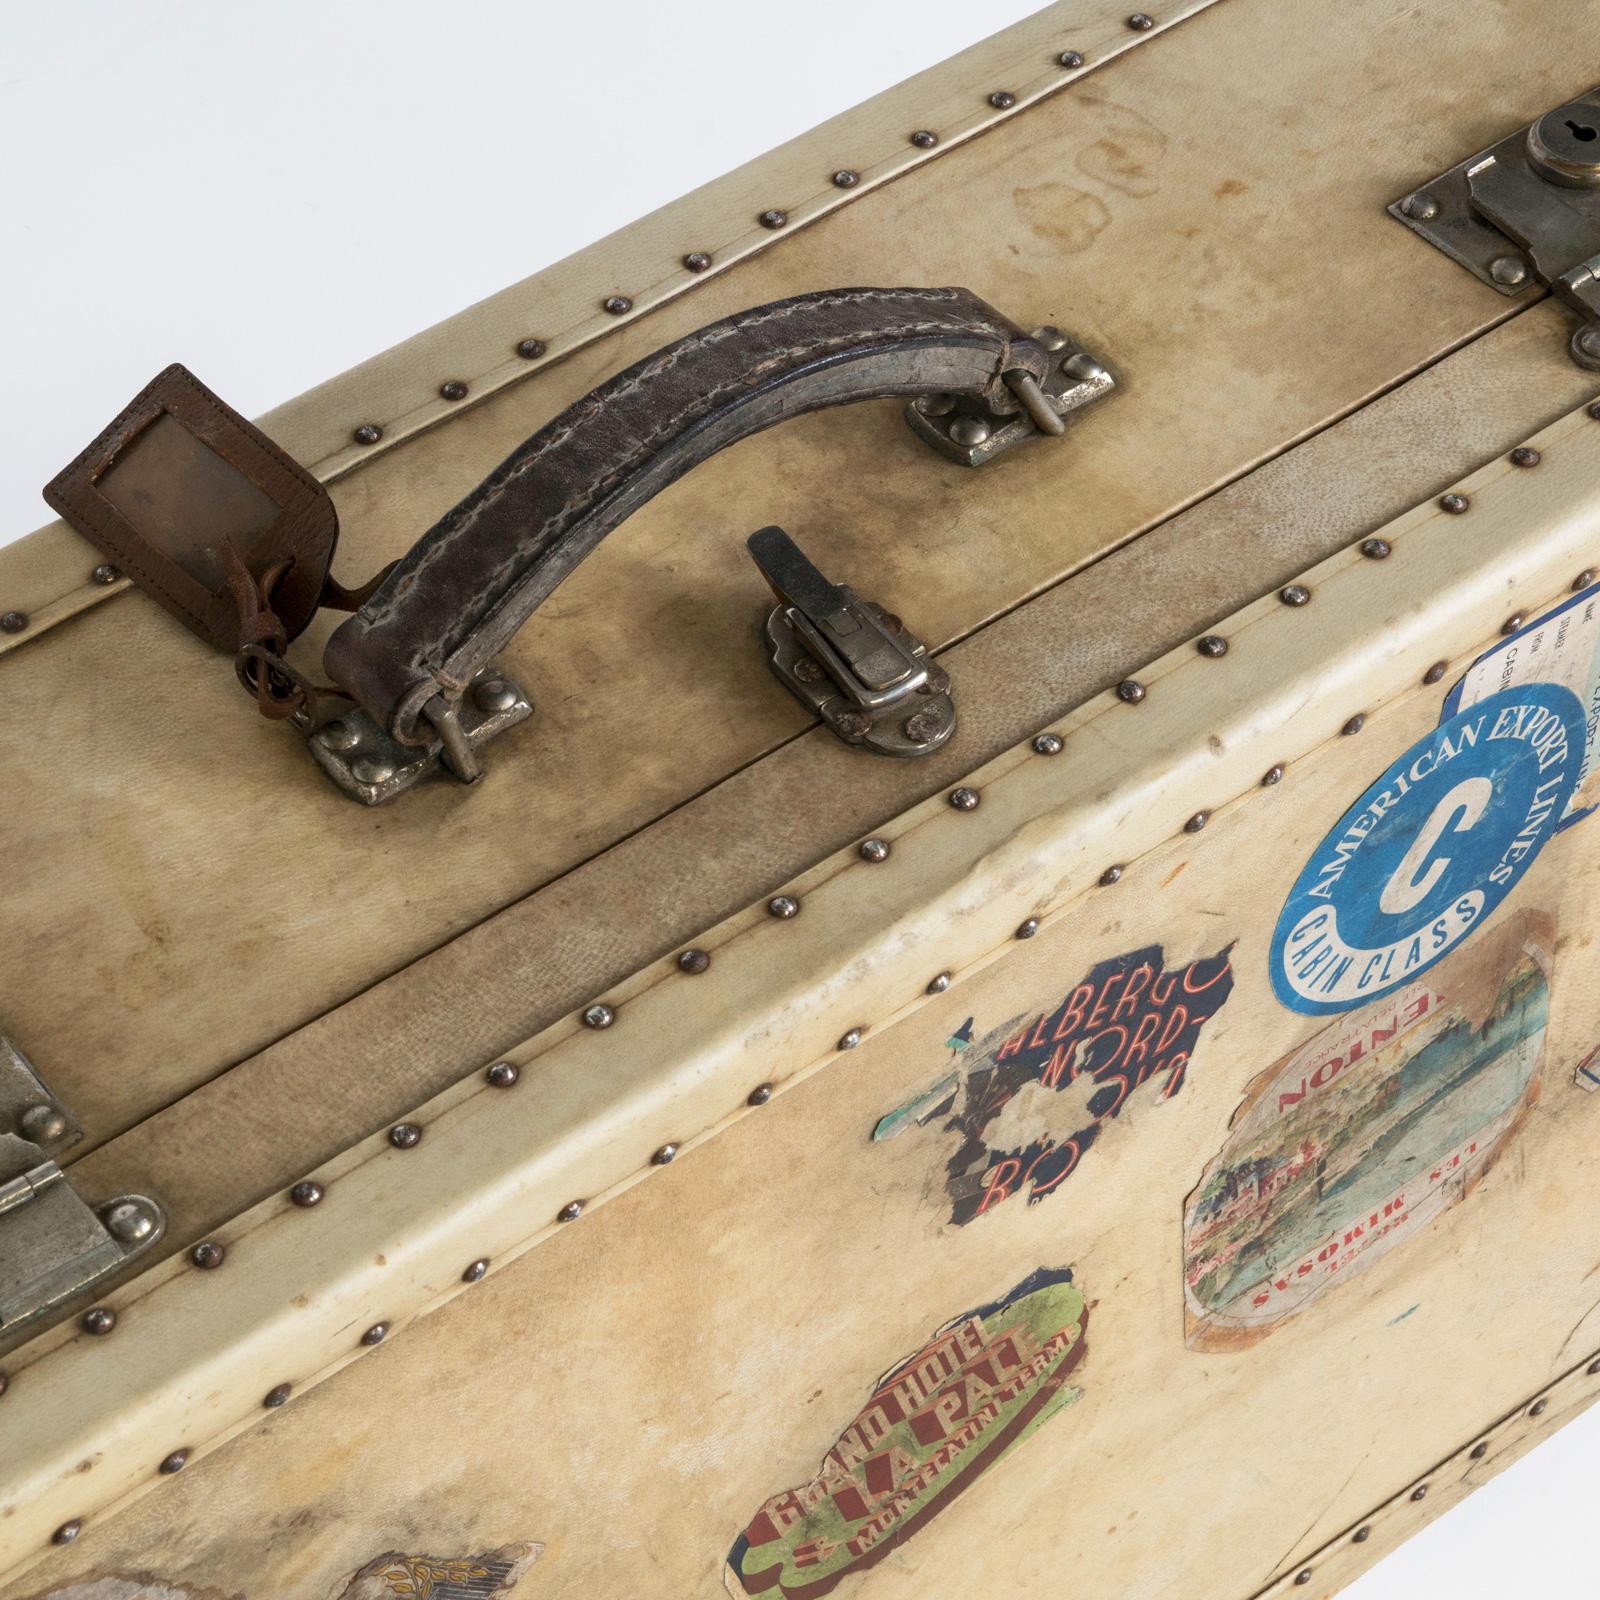 Élégante et finement travaillée, cette valise ou valise française en vélin crème des années 1920 respire la sophistication intemporelle.

Construite en bois et en parchemin, ornée de clous en laiton et de plaques de serrure, cette pièce témoigne